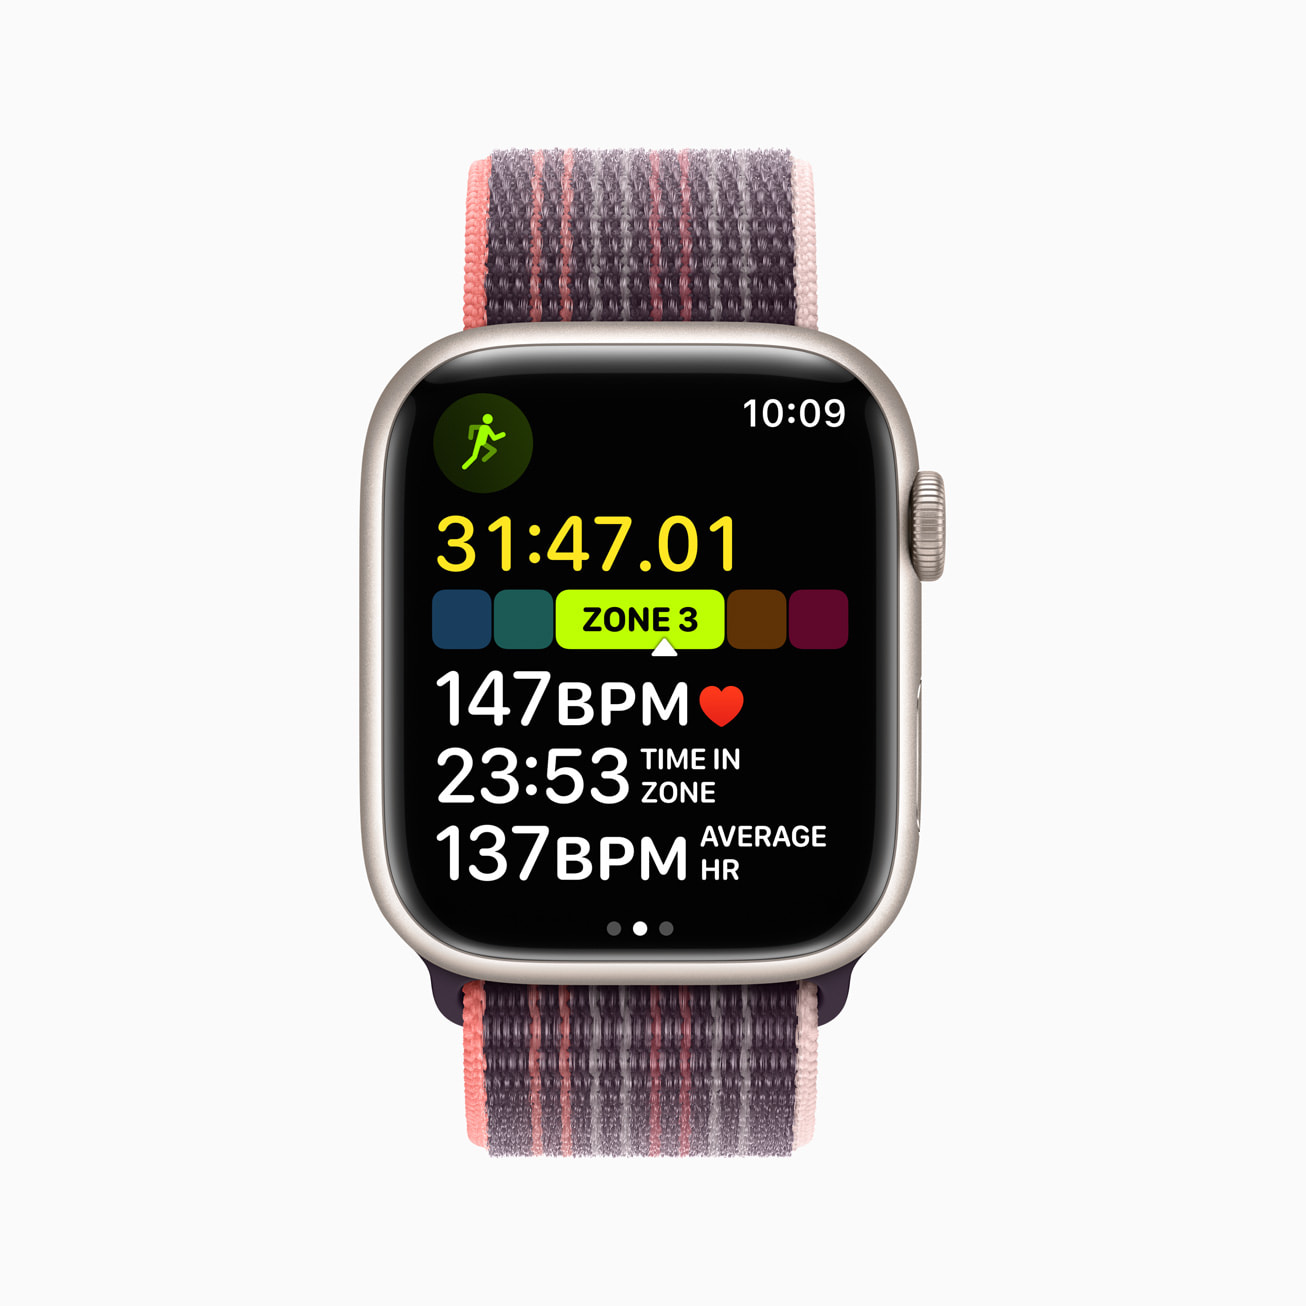 Apple-watchOS-9-Workout-app-Heart-Rate-Z